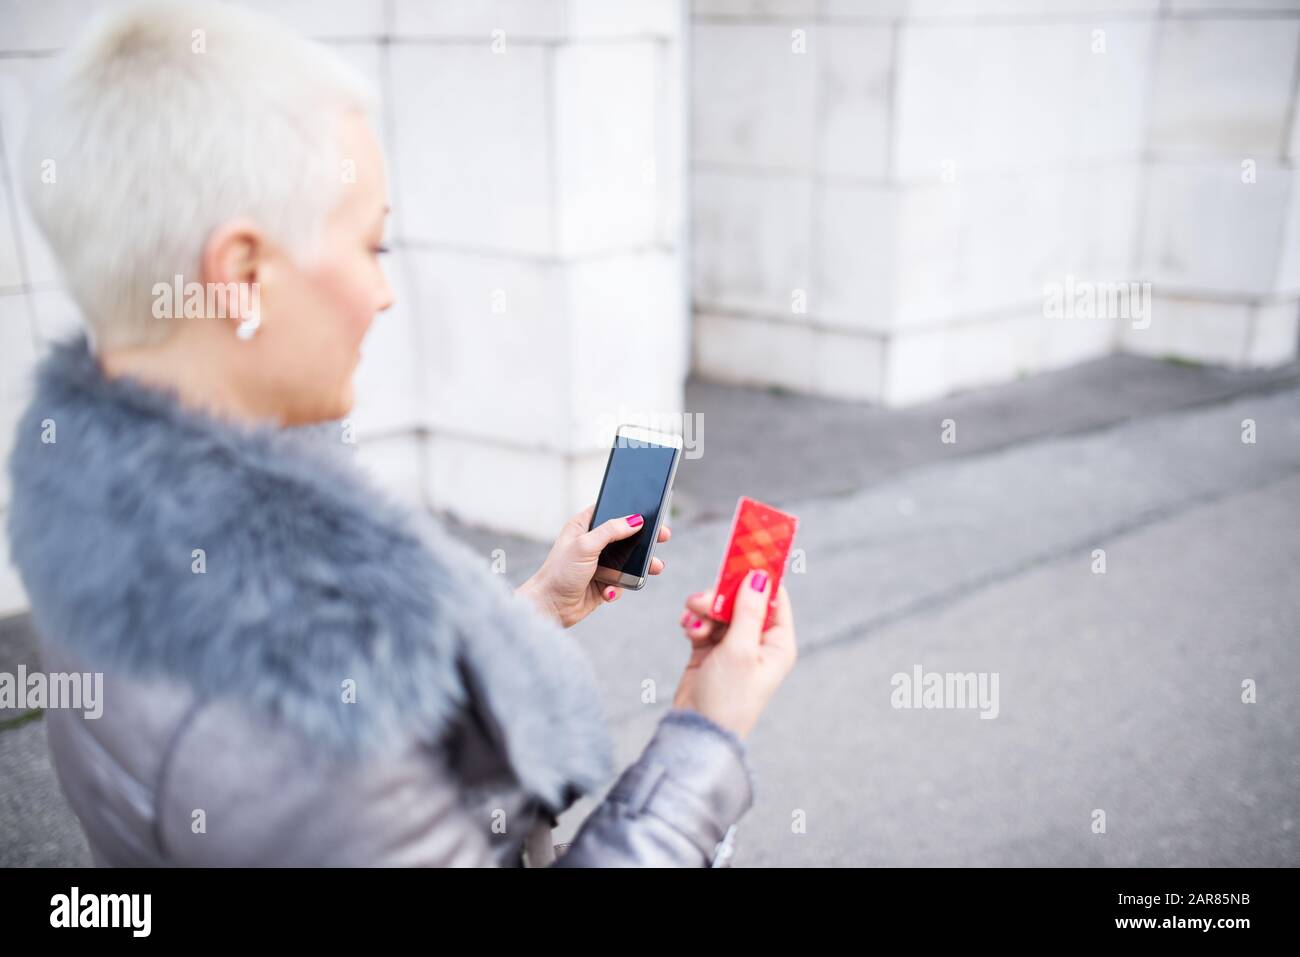 La femme dans la rue utilise un téléphone portable et tient une carte de paiement Banque D'Images